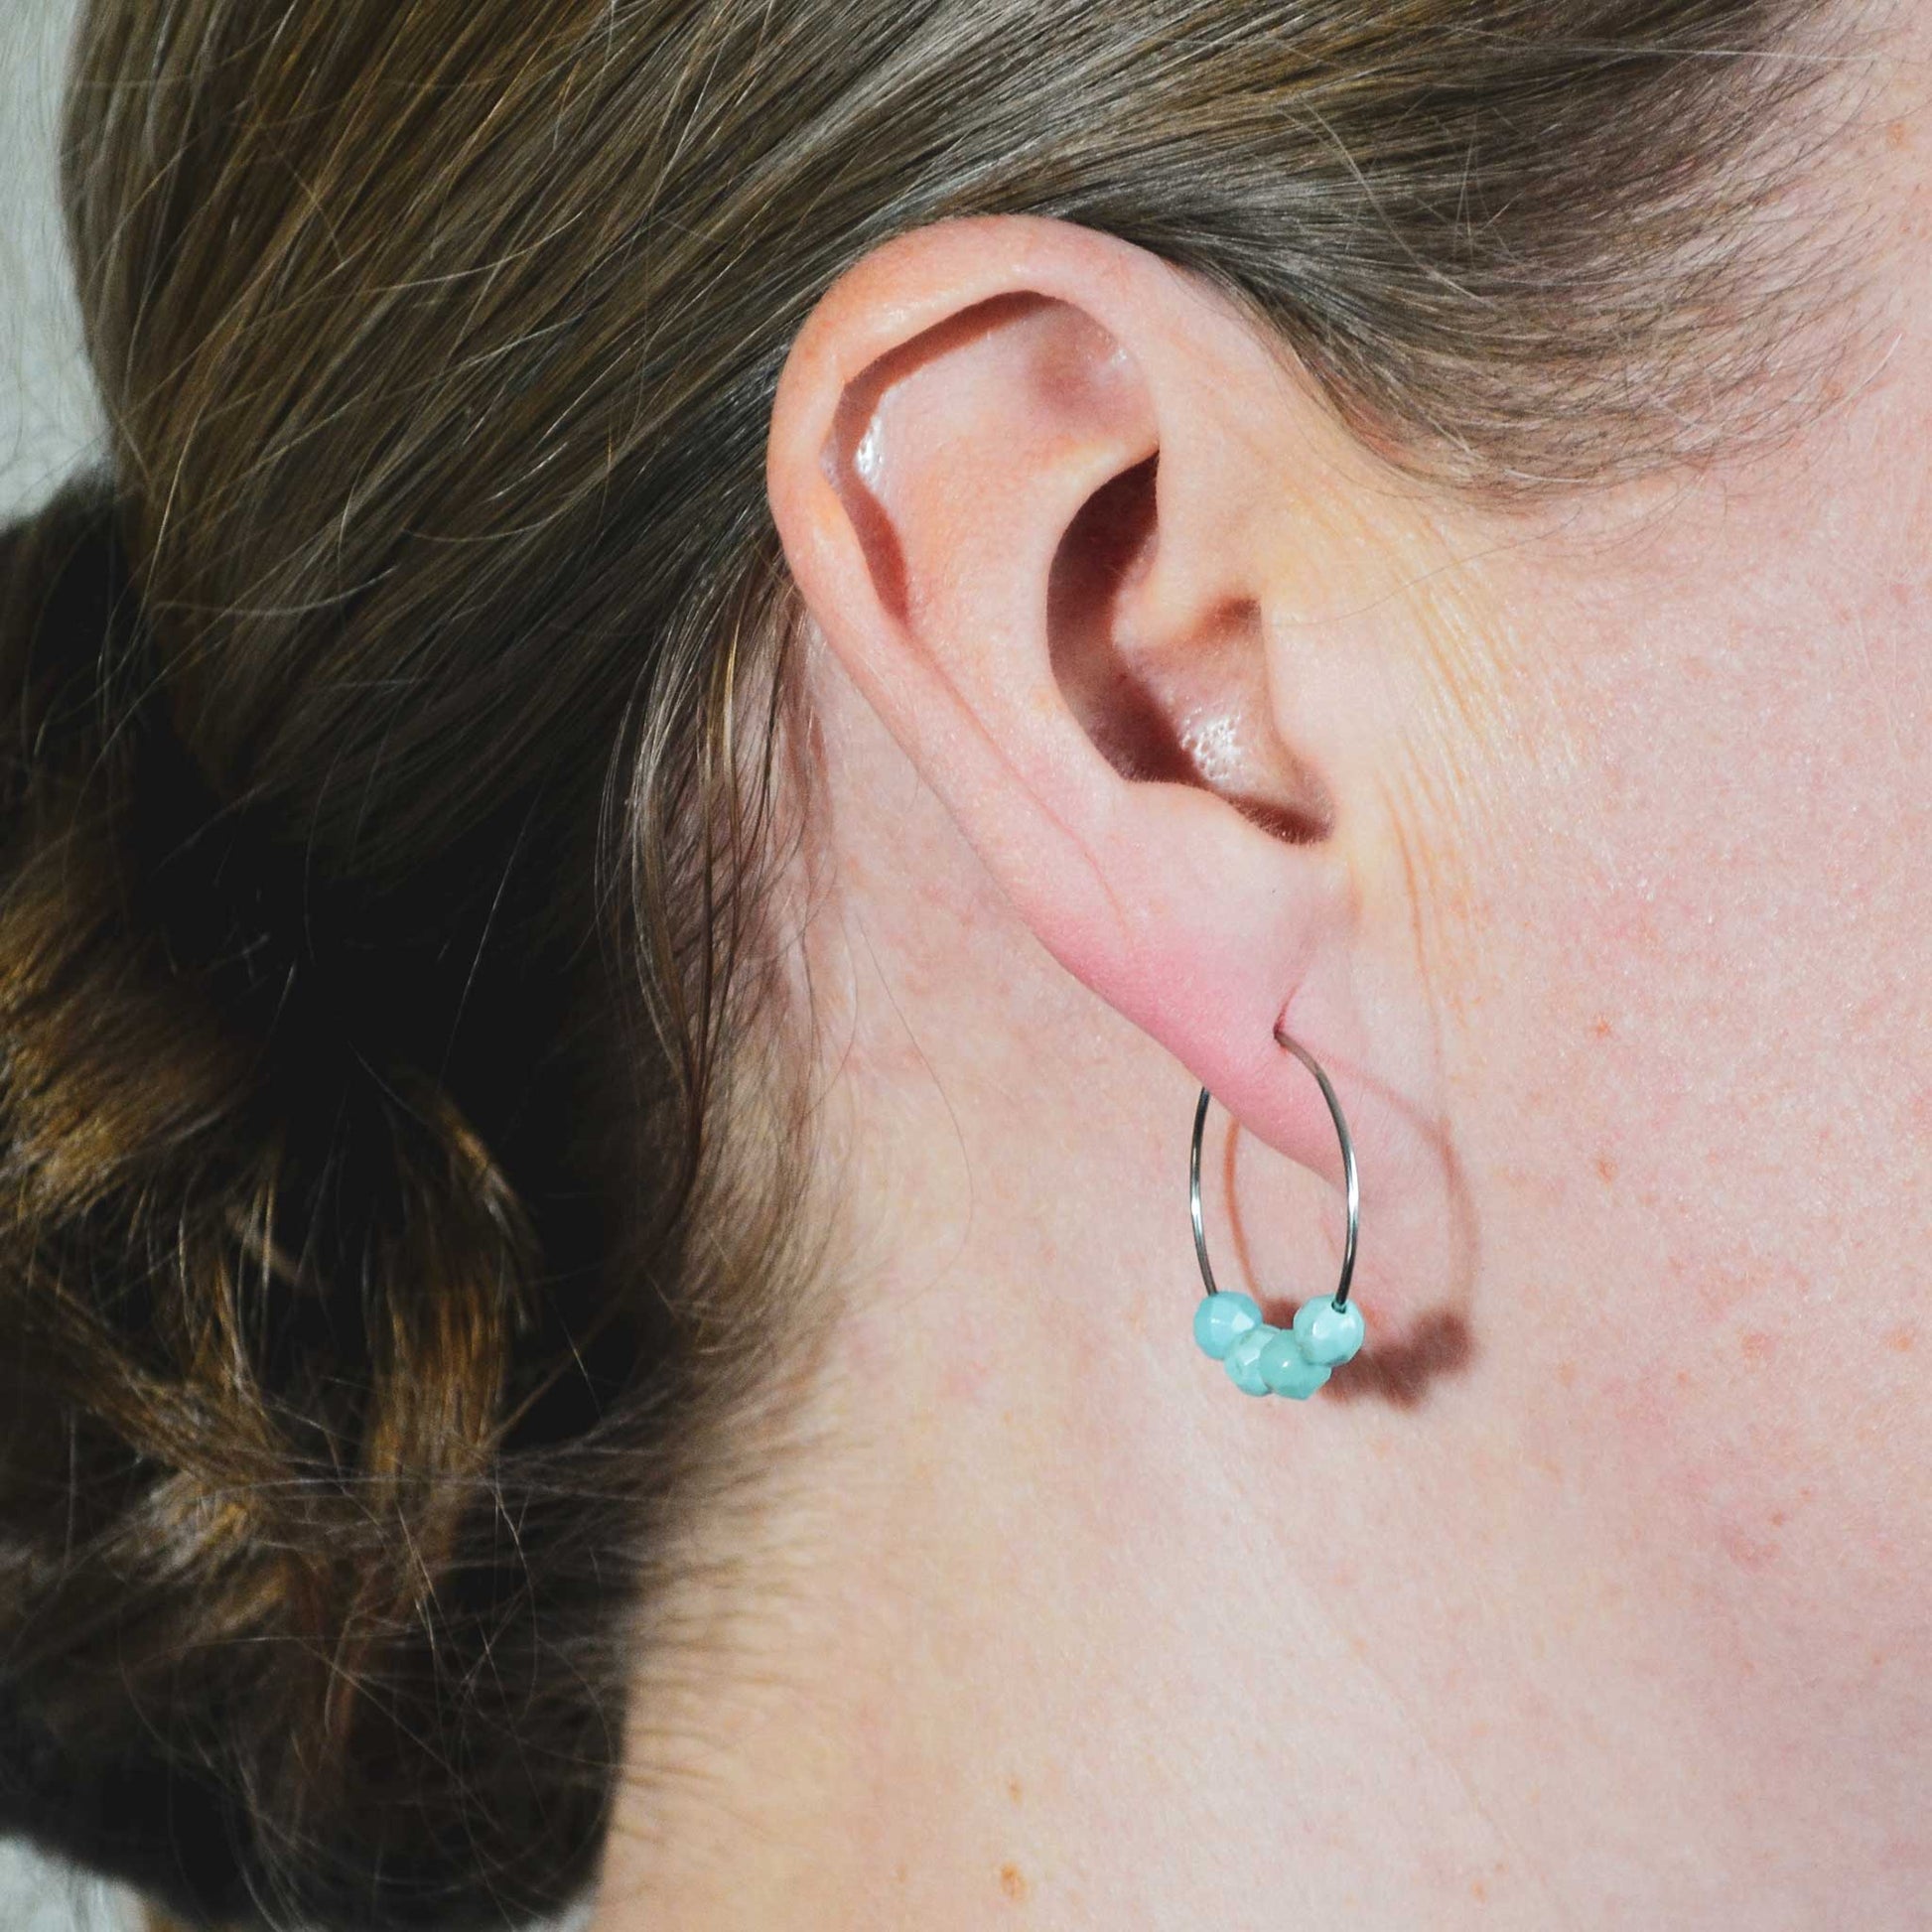 Woman wearing Turquoise hoop earrings in earlobe